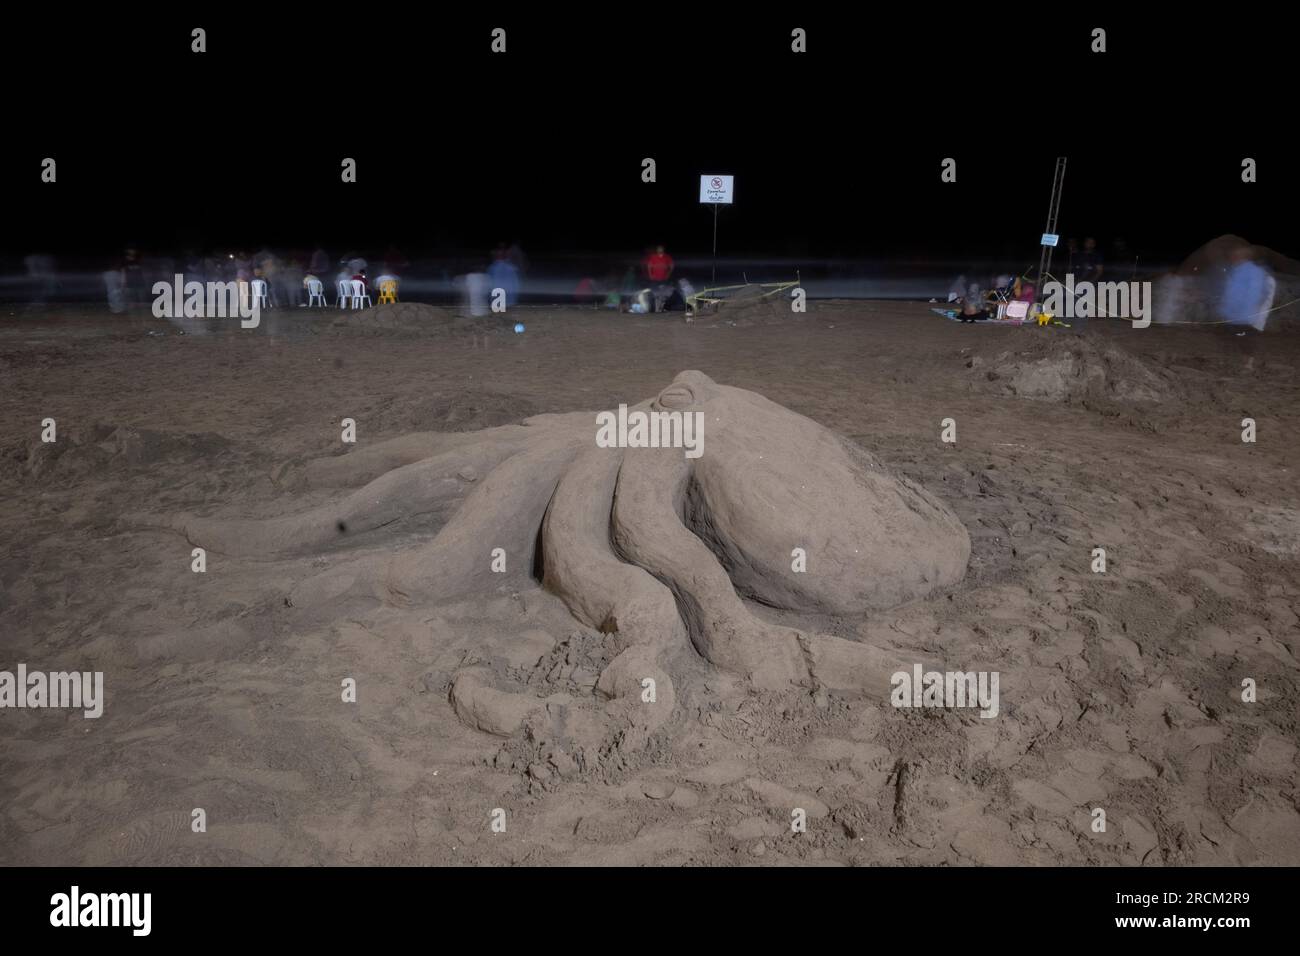 Une sculpture de sable est photographiée lors du Festival national de sculpture de sable de Babolsar, situé sur la côte sud de la mer Caspienne dans la province de Mazandaran, à 235 km (146 miles) au nord de Téhéran, le 13 juillet 2023. La ville de Babolsar, située dans la province de Mazandaran au nord de l’Iran, accueille un festival de sculptures sur sable qui met en valeur la créativité et le talent des artistes locaux. Cet événement unique offre l'occasion d'assister à des sculptures de sable complexes créées par des artistes qualifiés utilisant uniquement du sable et de l'eau, célébrant le riche patrimoine culturel et la diversité artistique de l'Iran. (Phot Banque D'Images